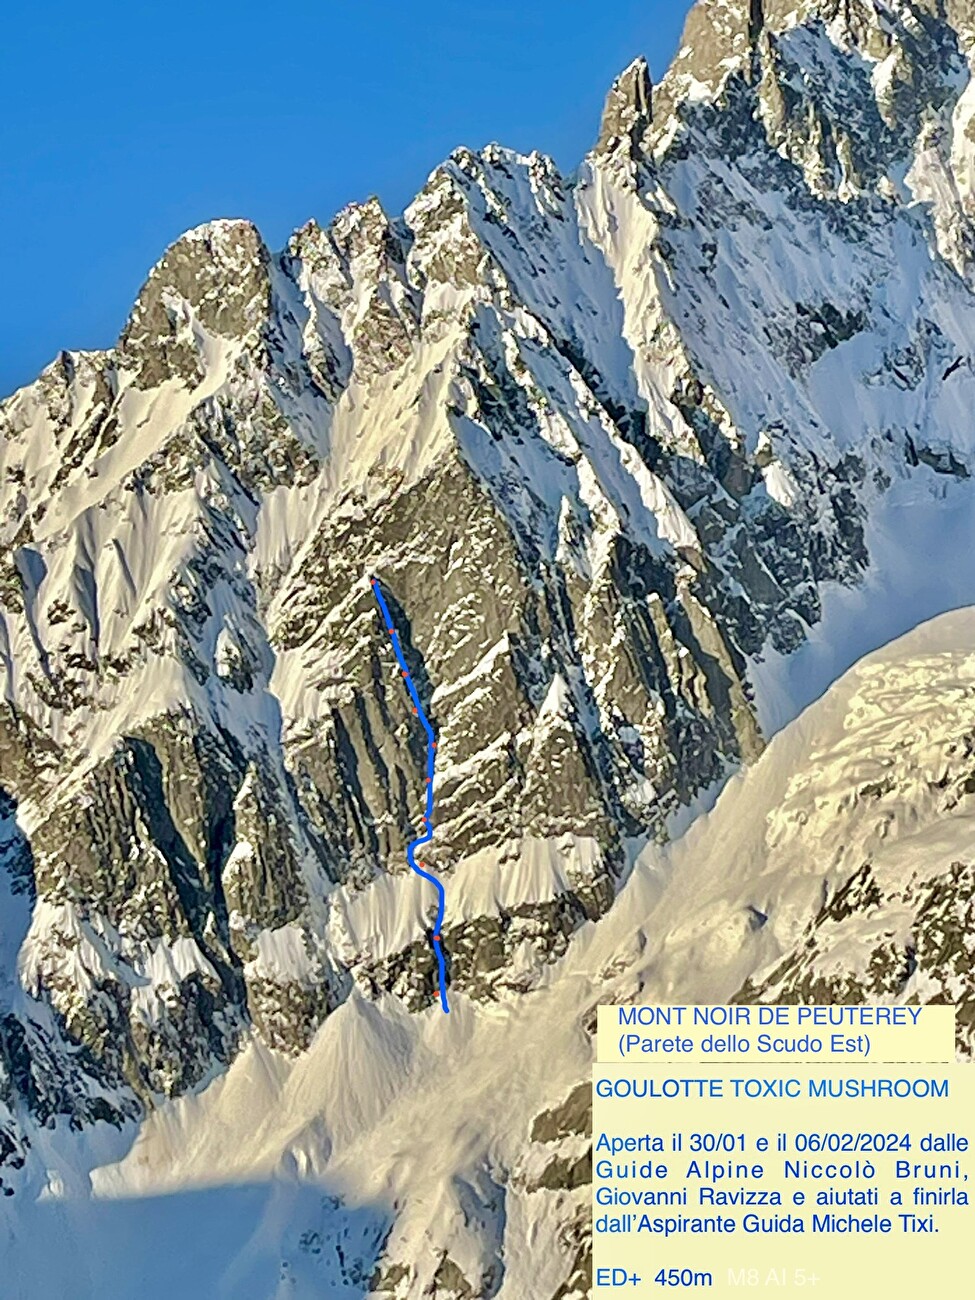 Mont Noir de Peutérey, Monte Bianco, Niccolò Bruni, Giovanni Ravizza, Michele Tixi